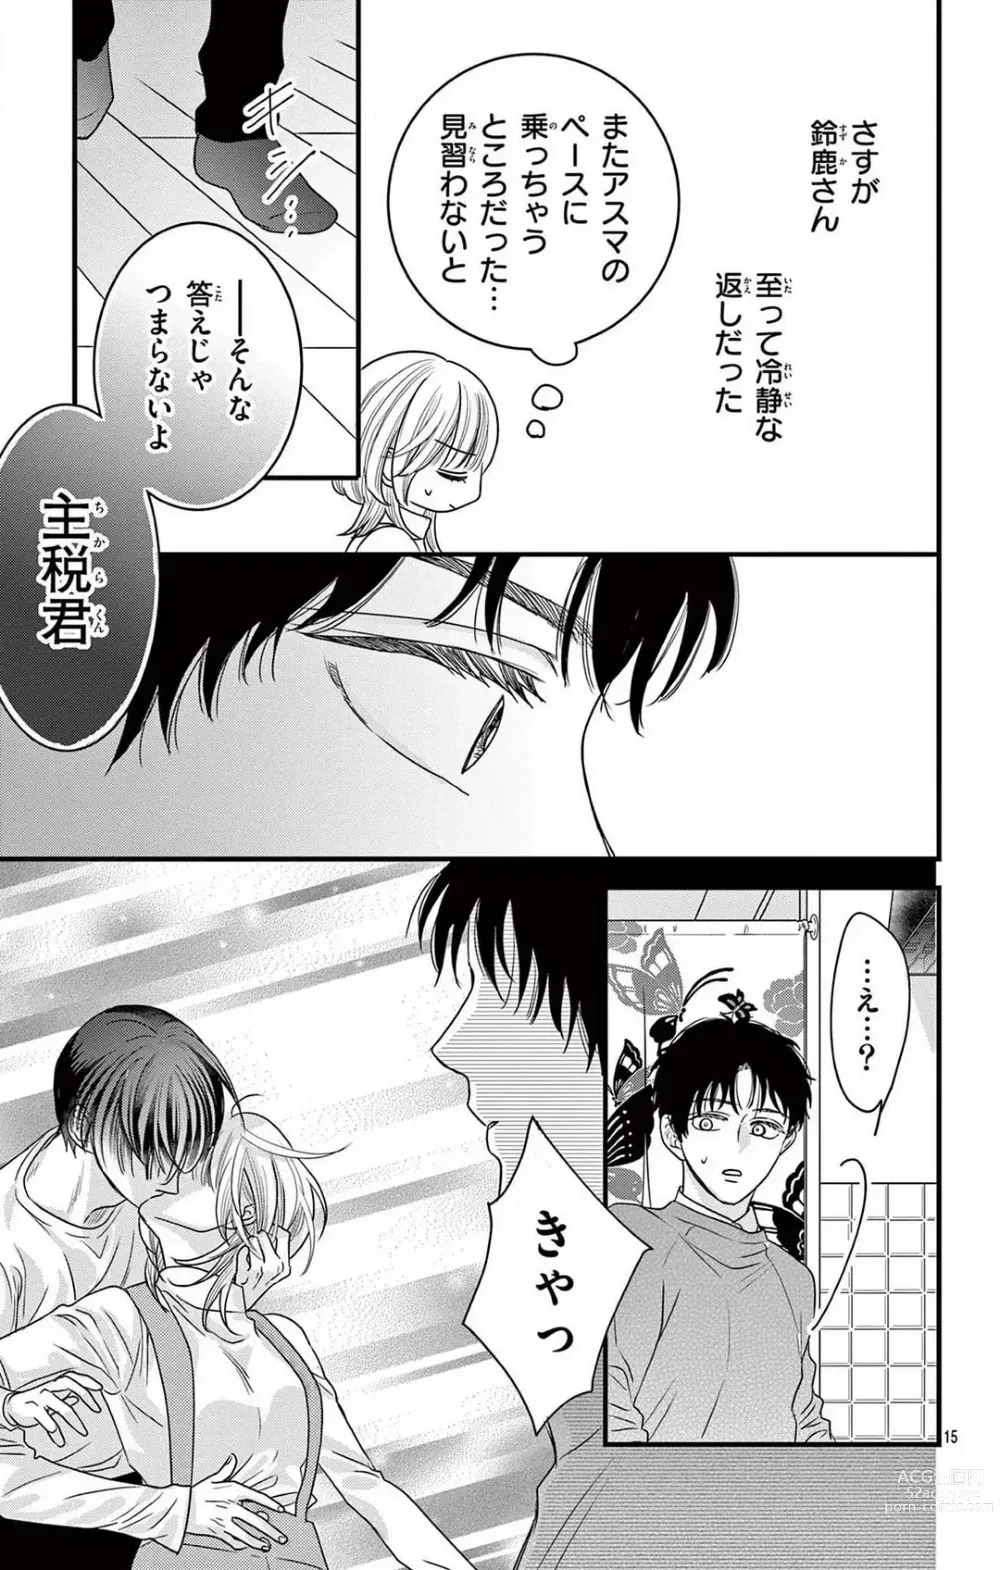 Page 221 of manga Kuzu wa Kuzu Demo Kao ga ii Kuzu 1-7